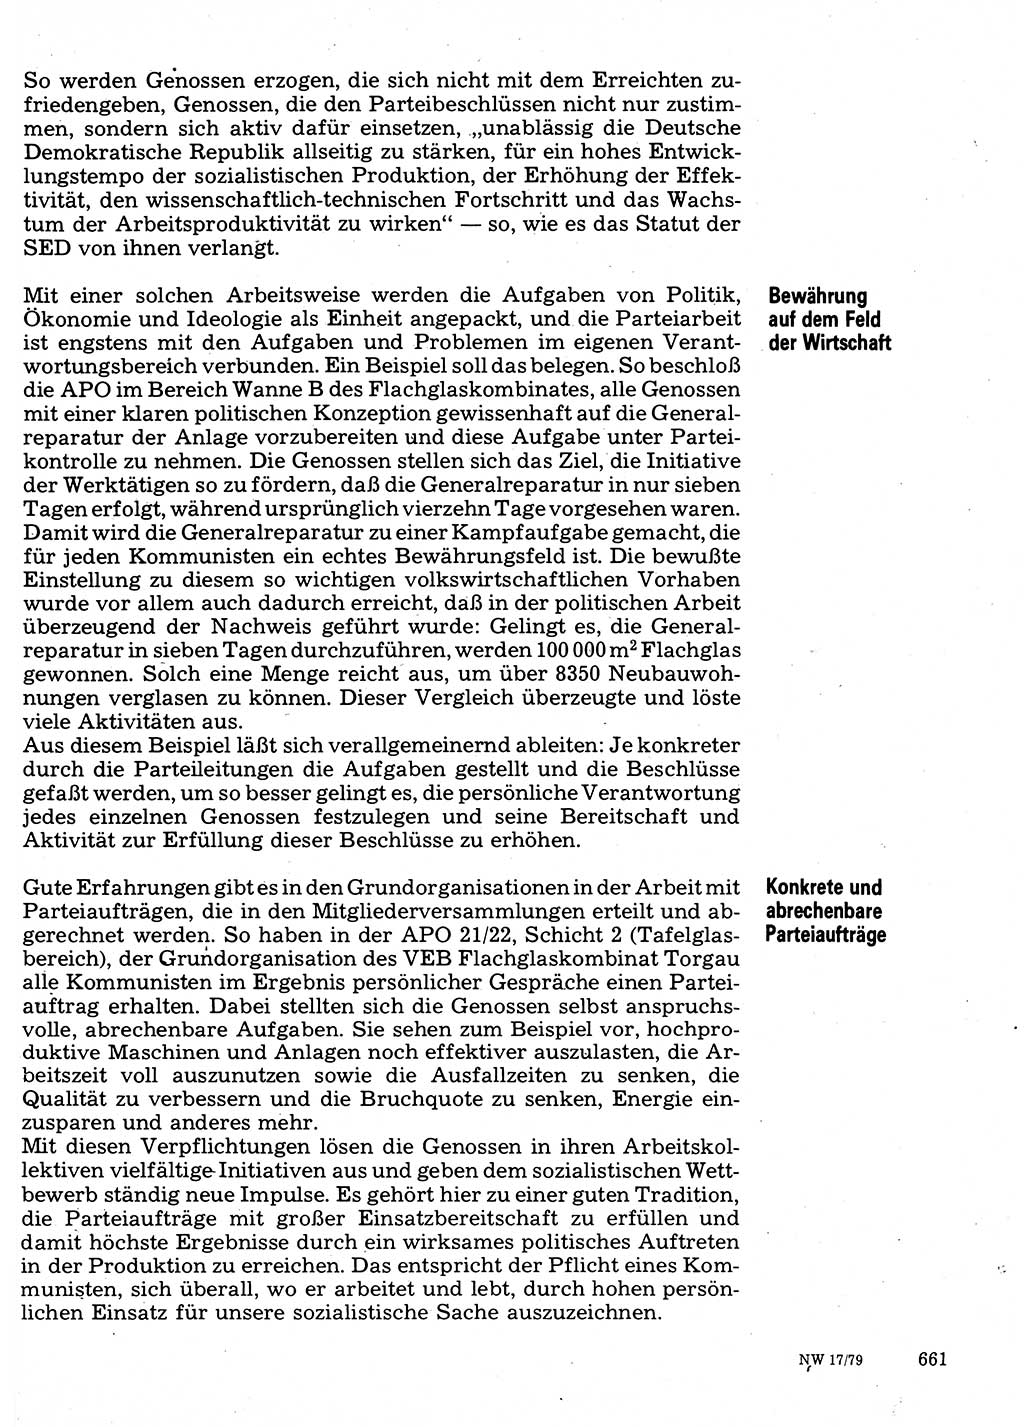 Neuer Weg (NW), Organ des Zentralkomitees (ZK) der SED (Sozialistische Einheitspartei Deutschlands) für Fragen des Parteilebens, 34. Jahrgang [Deutsche Demokratische Republik (DDR)] 1979, Seite 661 (NW ZK SED DDR 1979, S. 661)